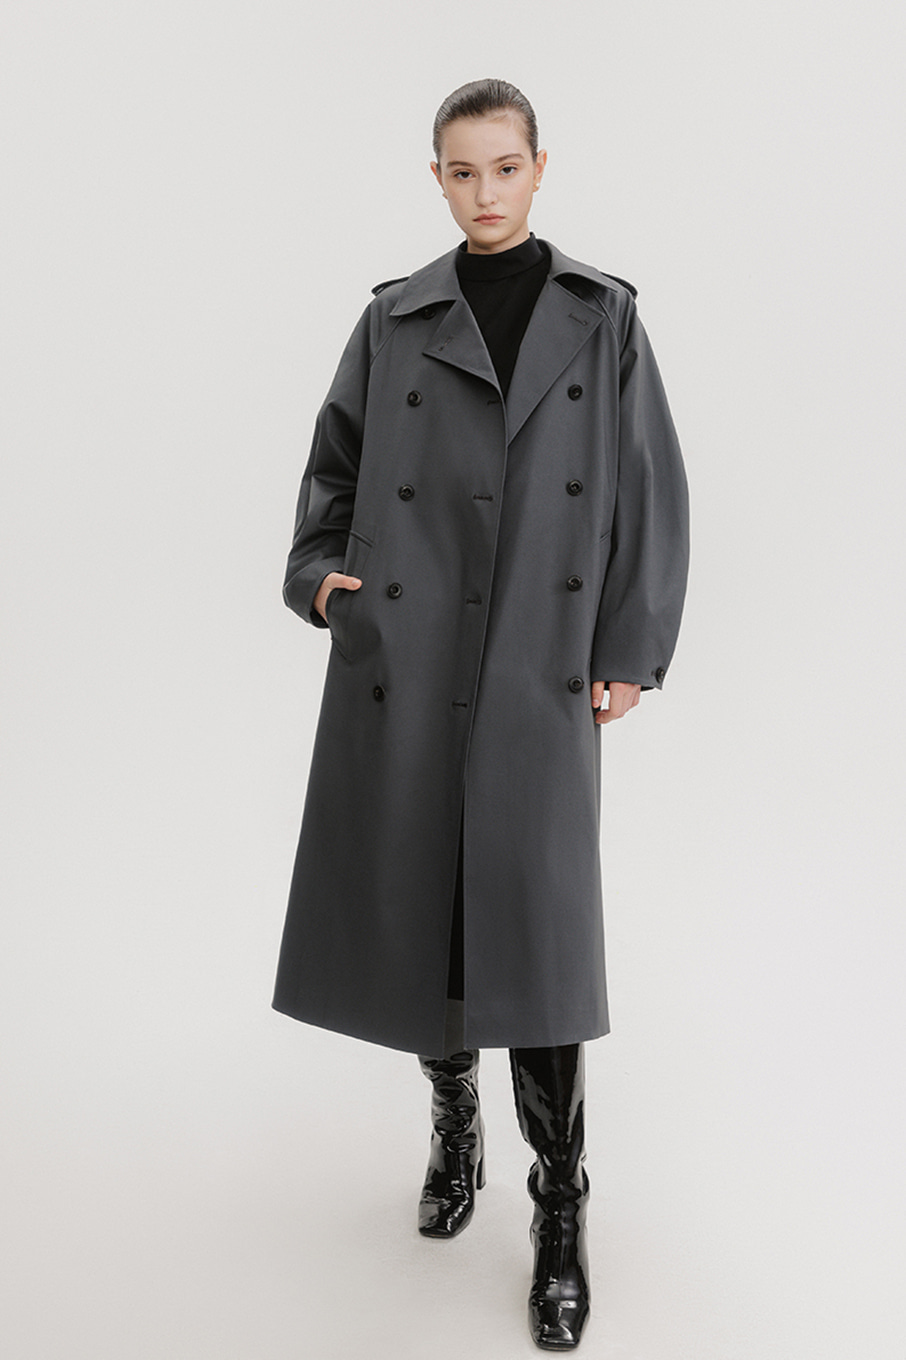 Haflo coat (Gray) (1차 판매 완료) 2차 입고